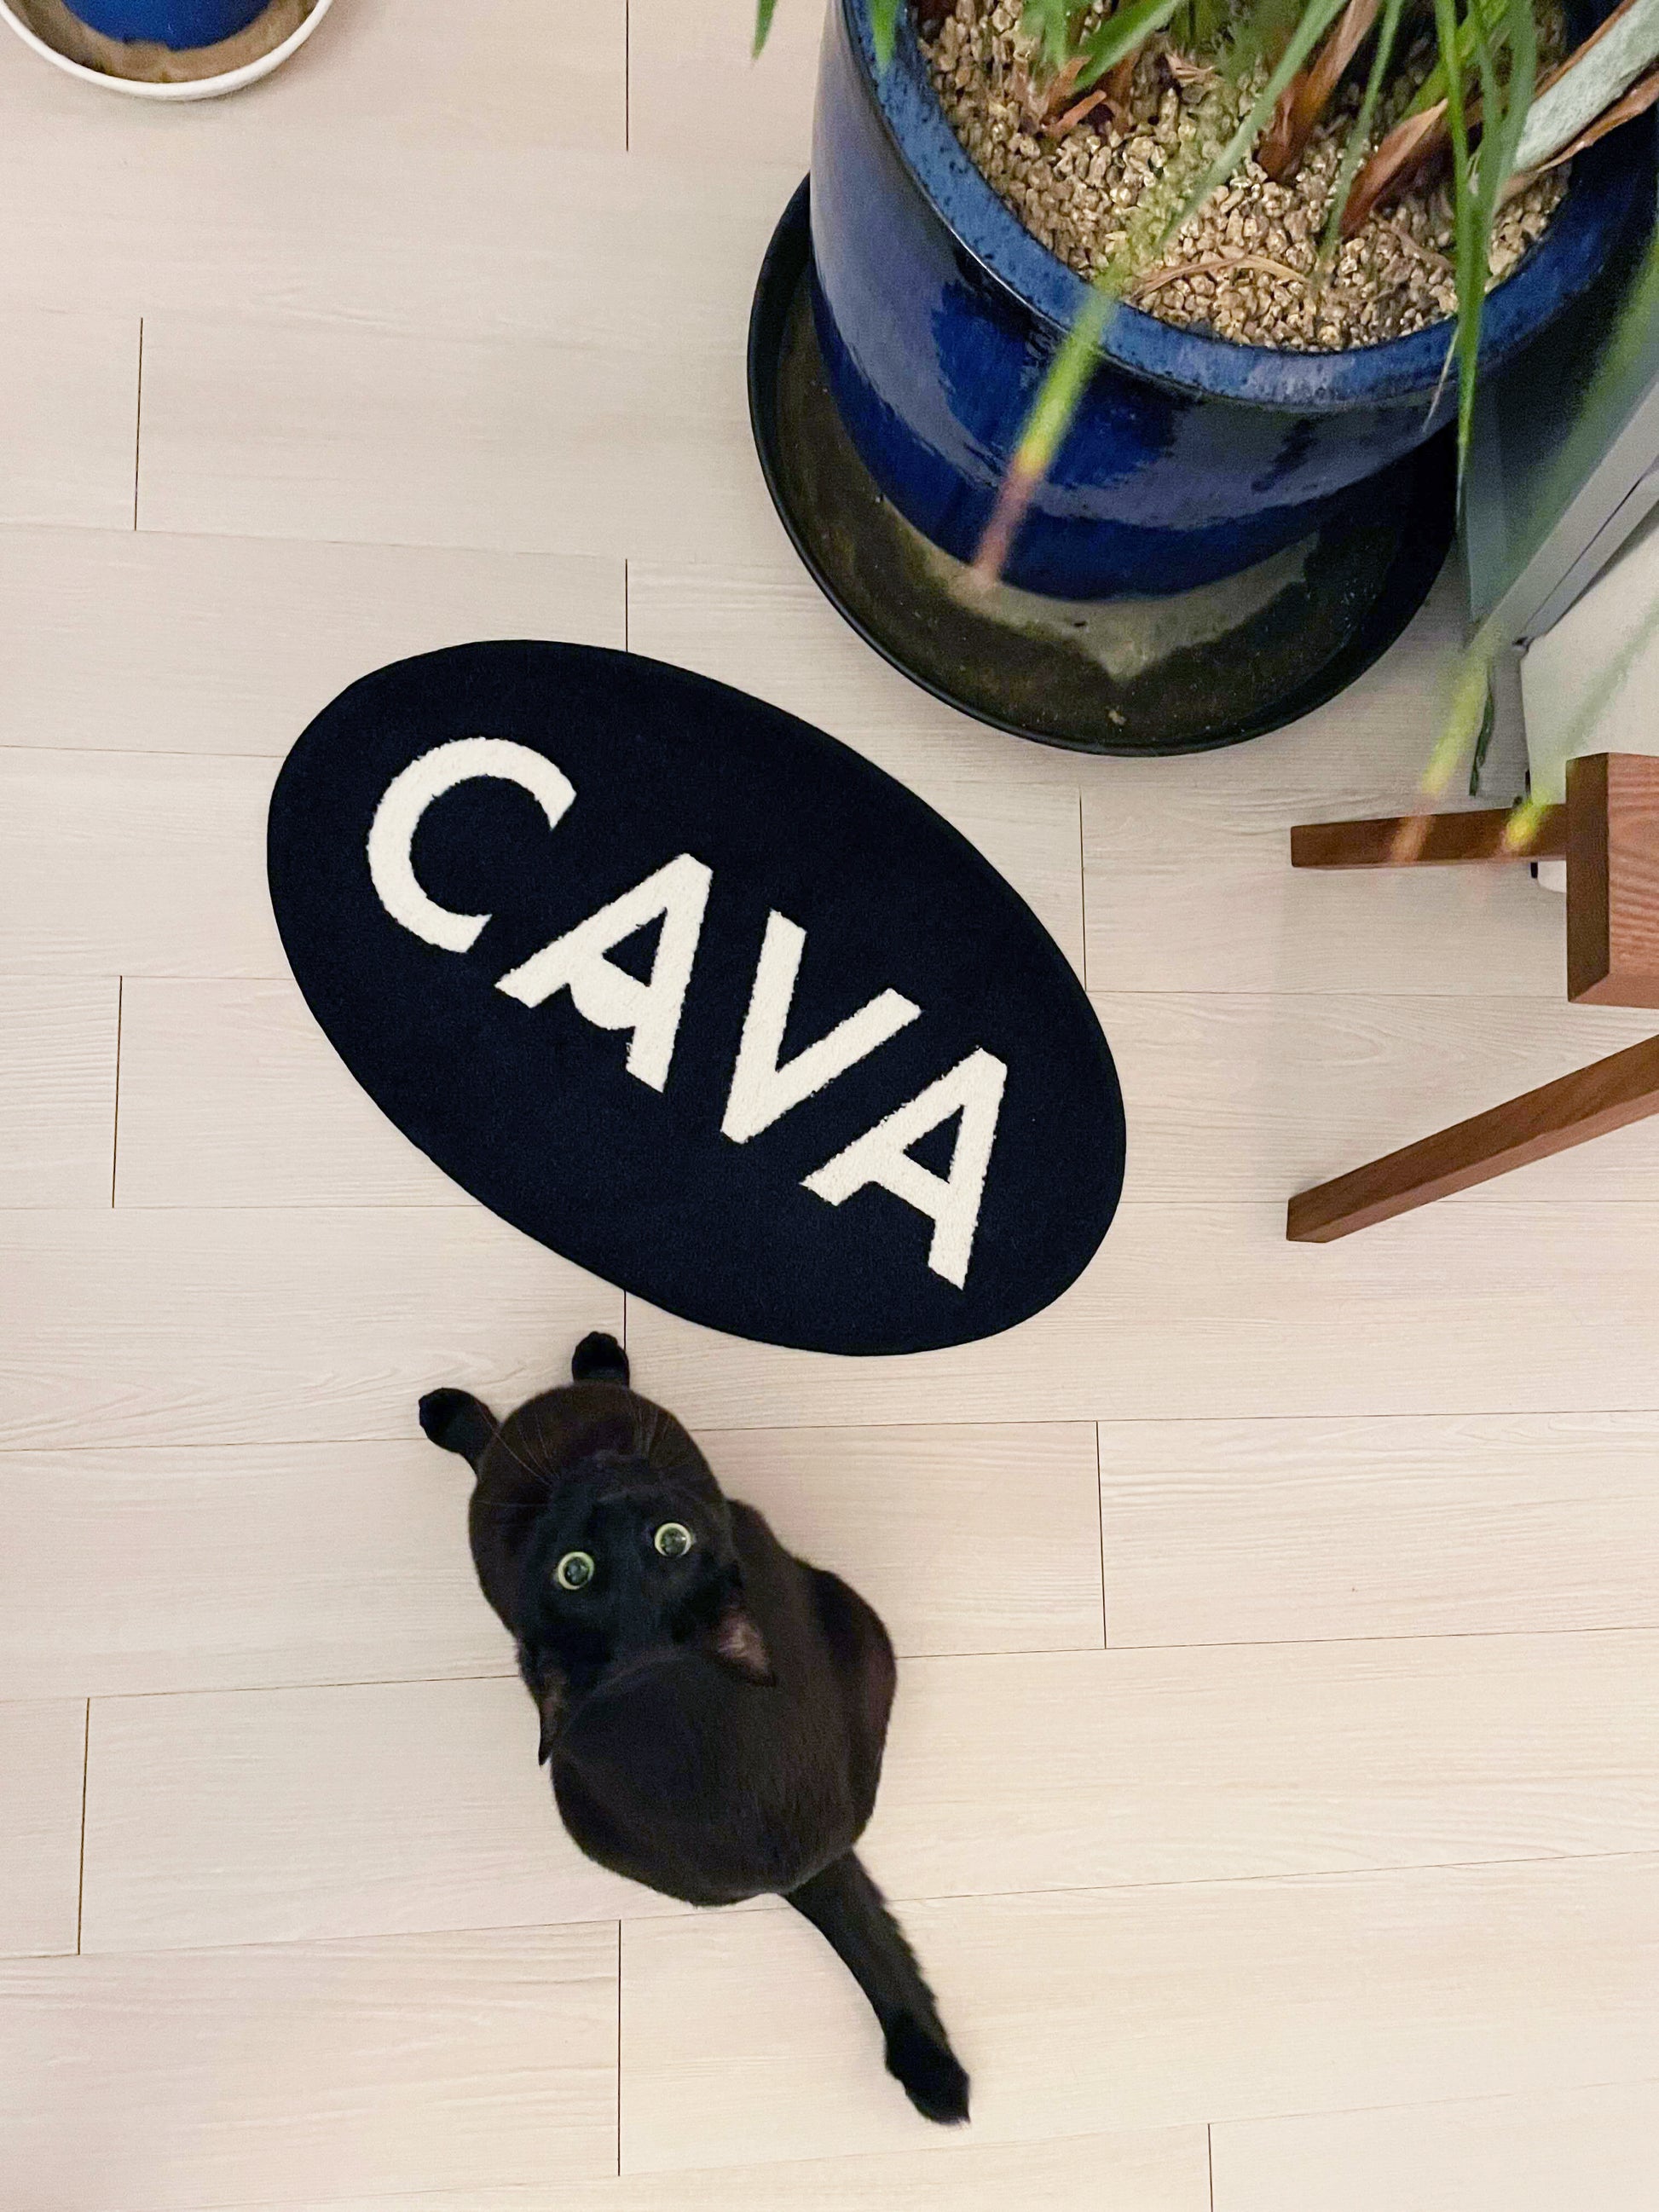 카바 라이프에서 판매 중인 하얀 카바 로고가 새겨진 검정색 타원형 도어매트가 바닥에 깔려 있고 그 옆에 앉아서 카메라를 올려다 보는 검은 고양이를  위에서 내려다 보며 촬영한 사진입니다. 